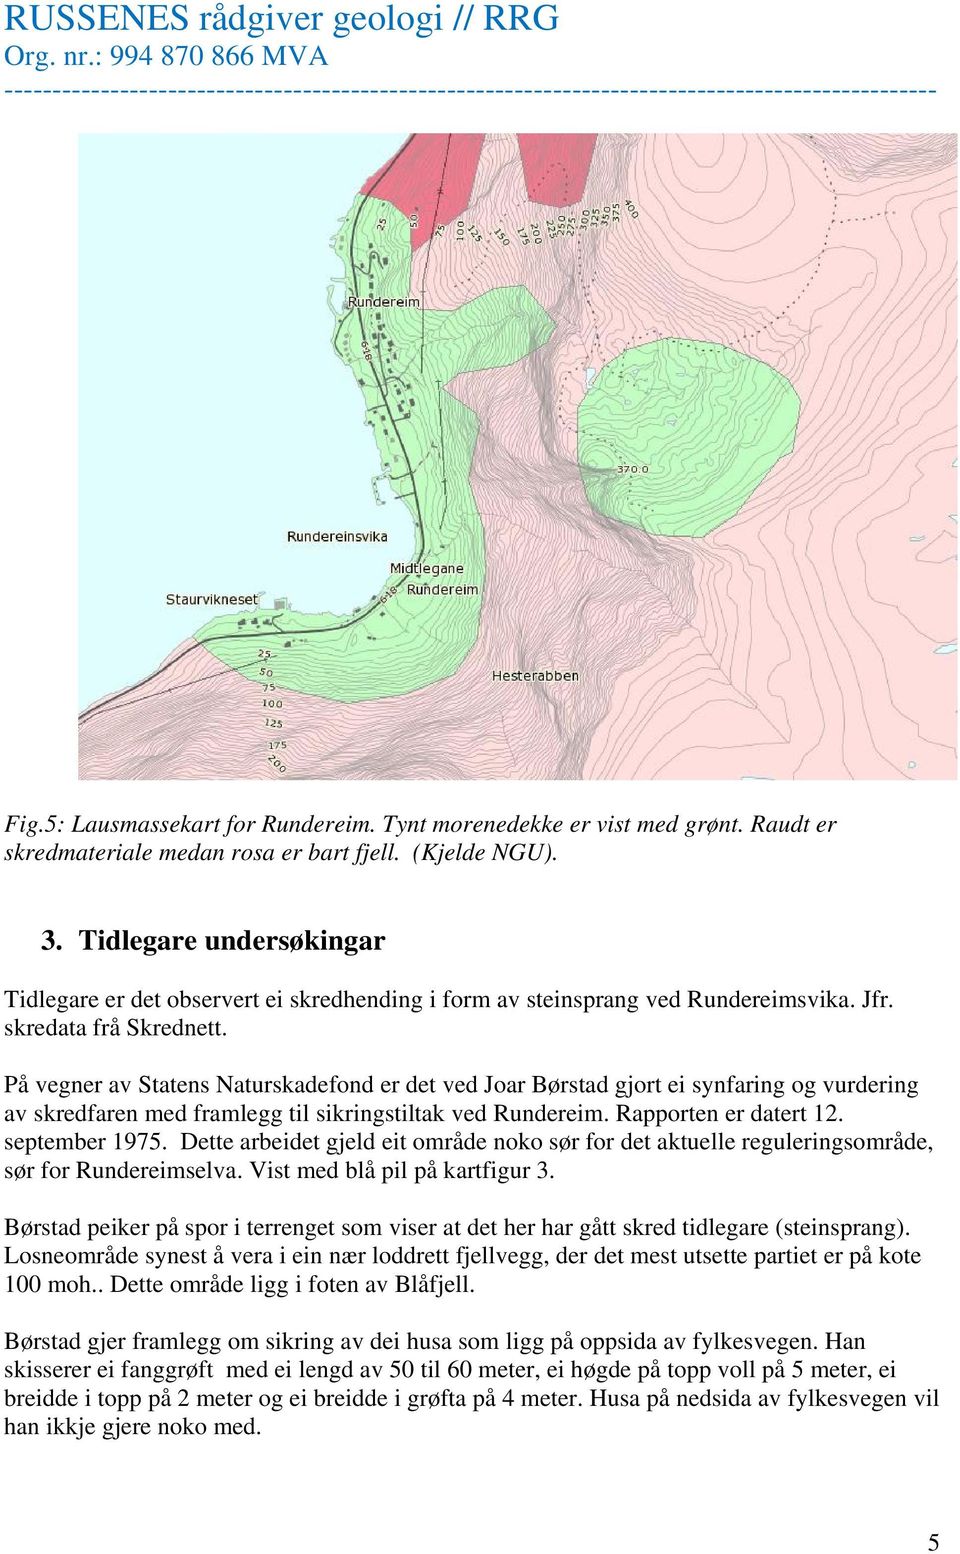 På vegner av Statens Naturskadefond er det ved Joar Børstad gjort ei synfaring og vurdering av skredfaren med framlegg til sikringstiltak ved Rundereim. Rapporten er datert 12. september 1975.